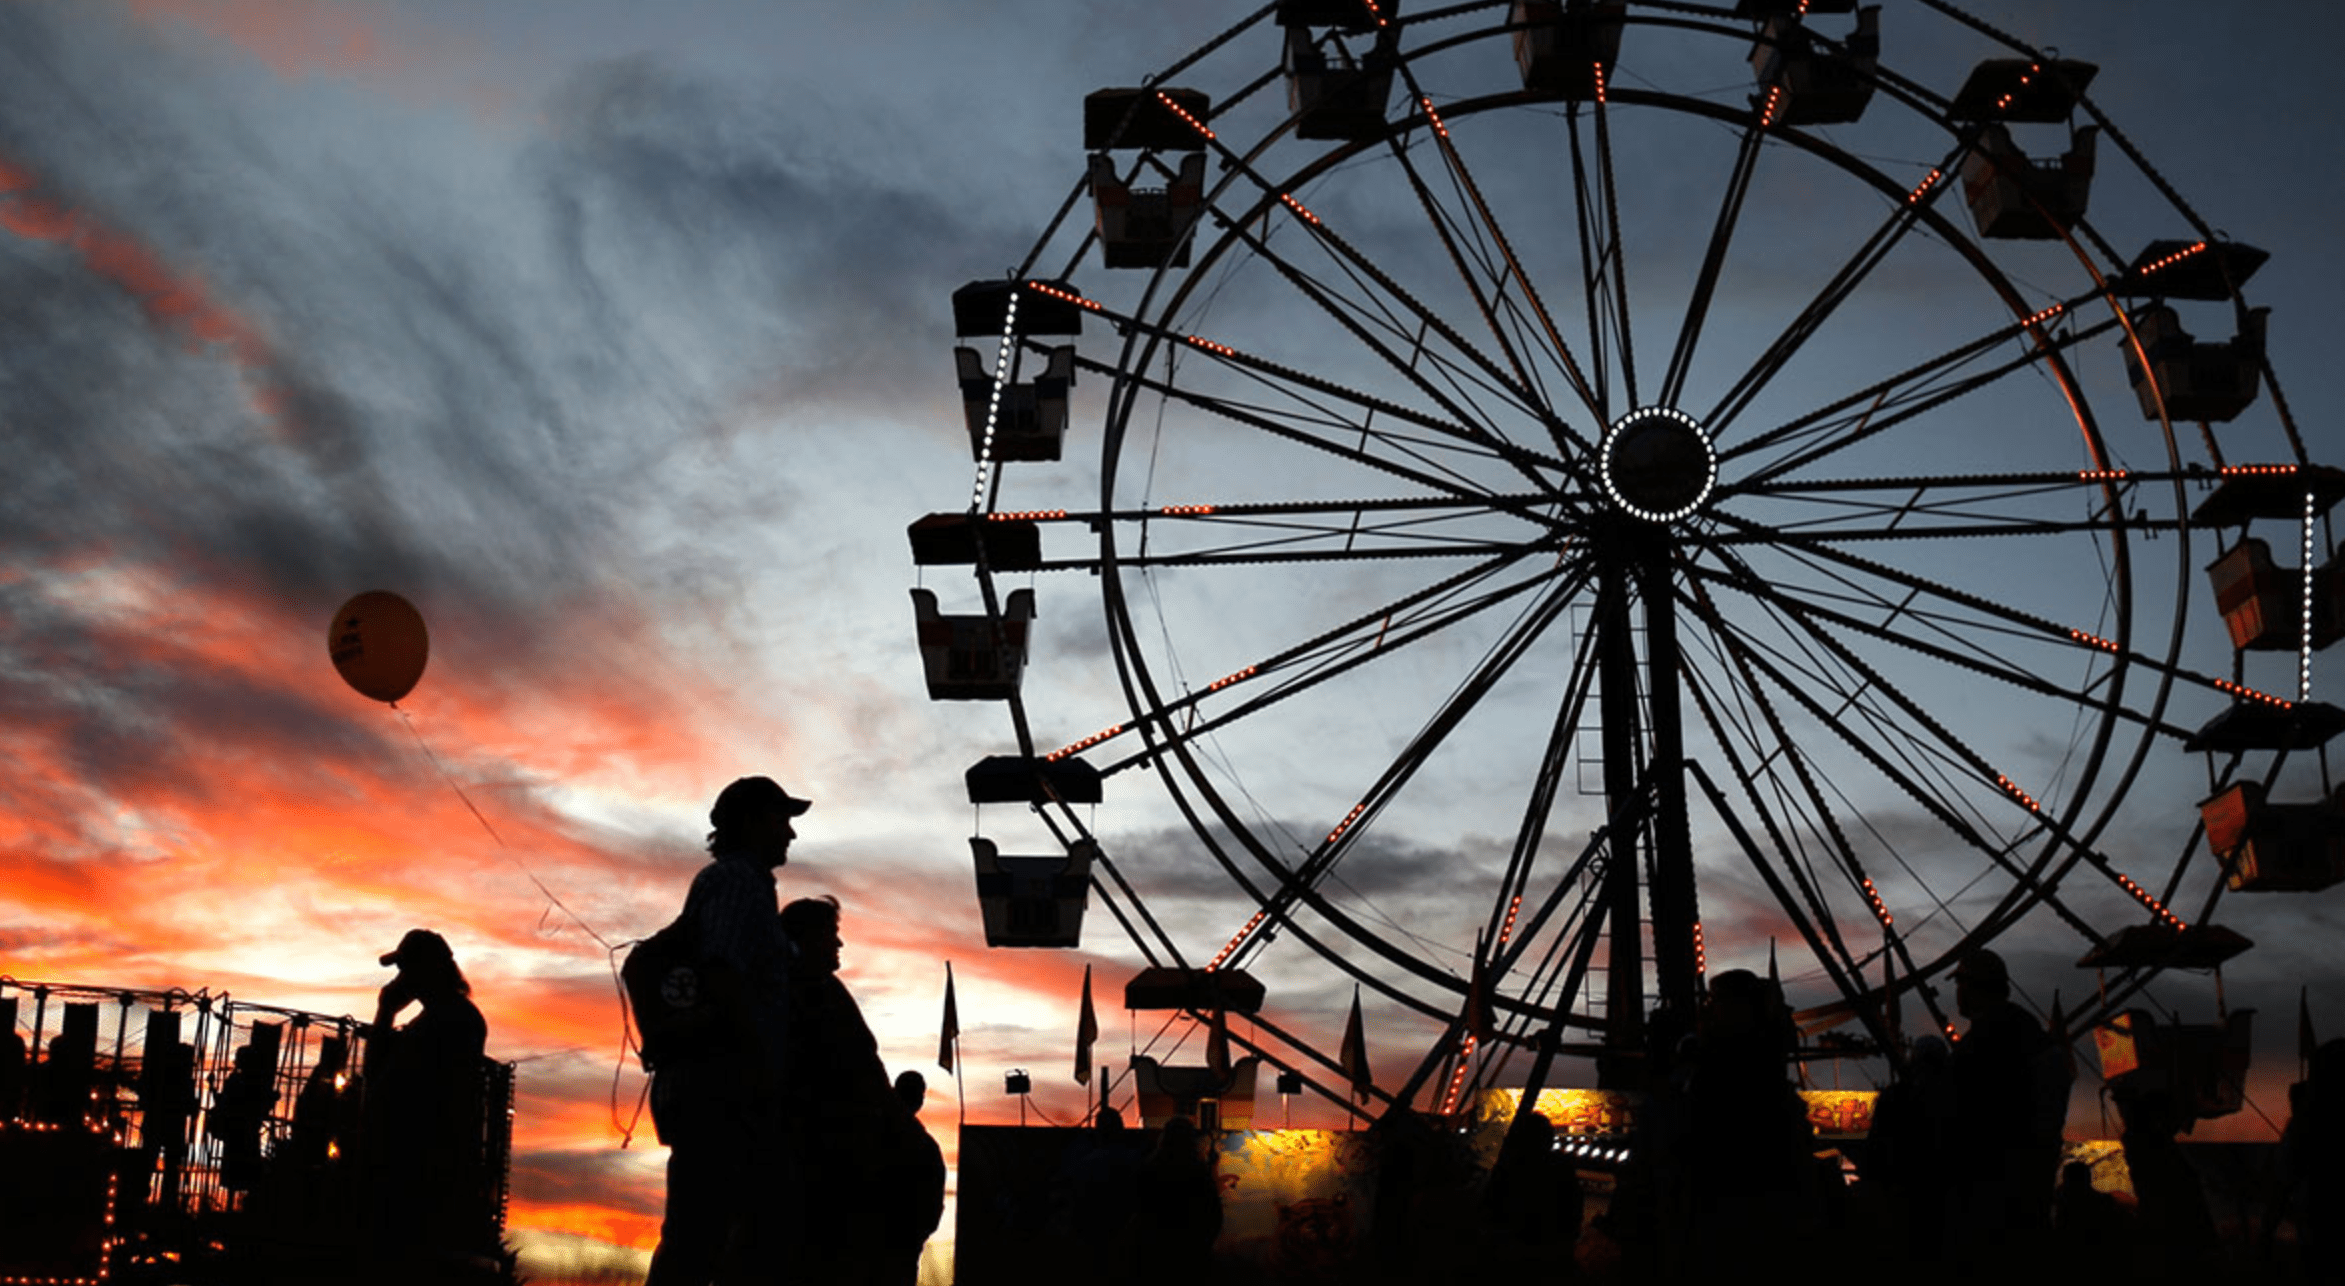 county fair silhouette